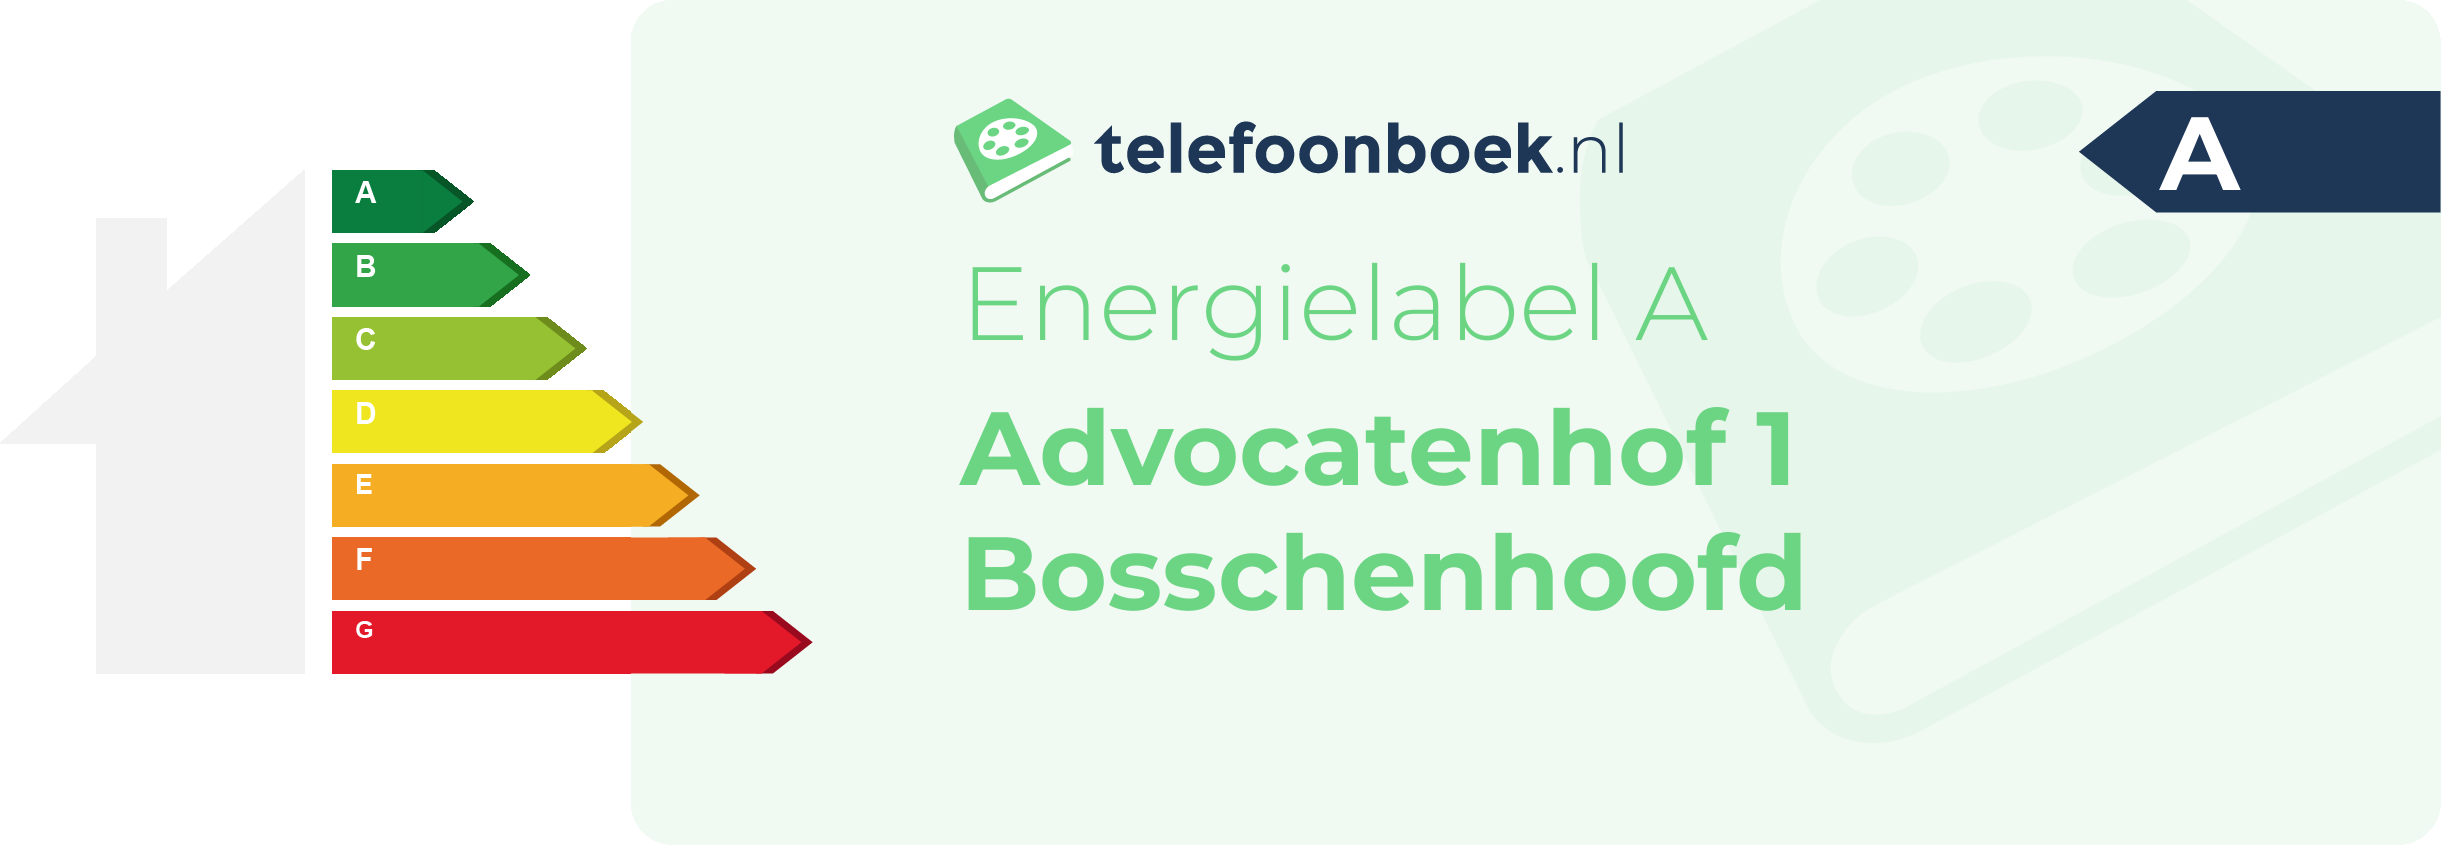 Energielabel Advocatenhof 1 Bosschenhoofd